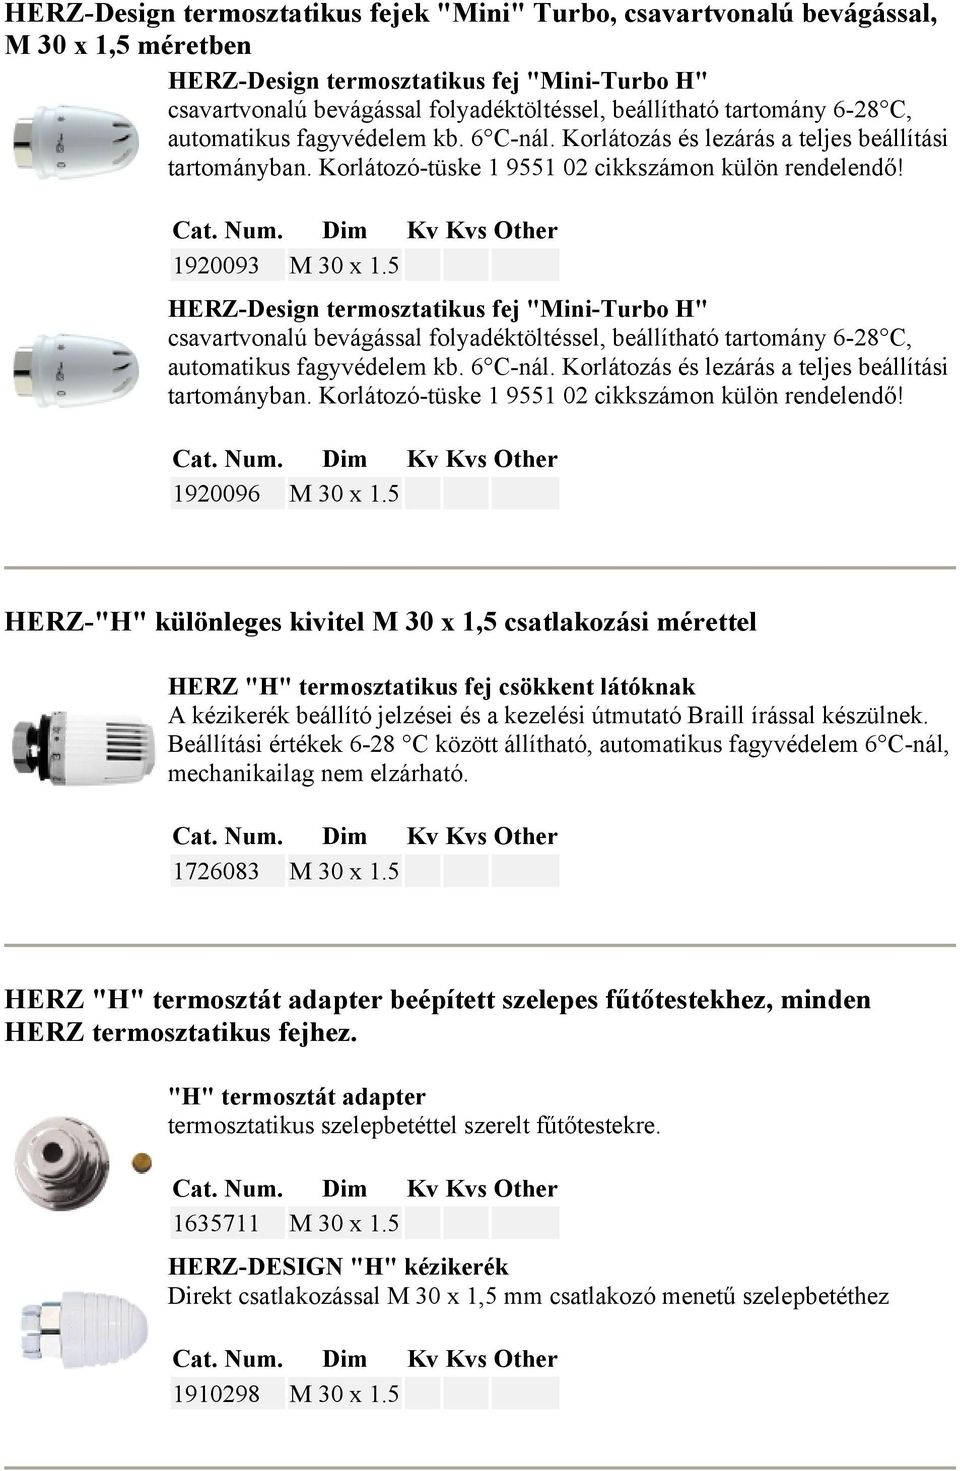 5 HERZ-Design termosztatikus fej "Mini-Turbo H" csavartvonalú bevágással folyadéktöltéssel, beállítható tartomány 6-28 C, automatikus fagyvédelem kb. 6 C-nál.